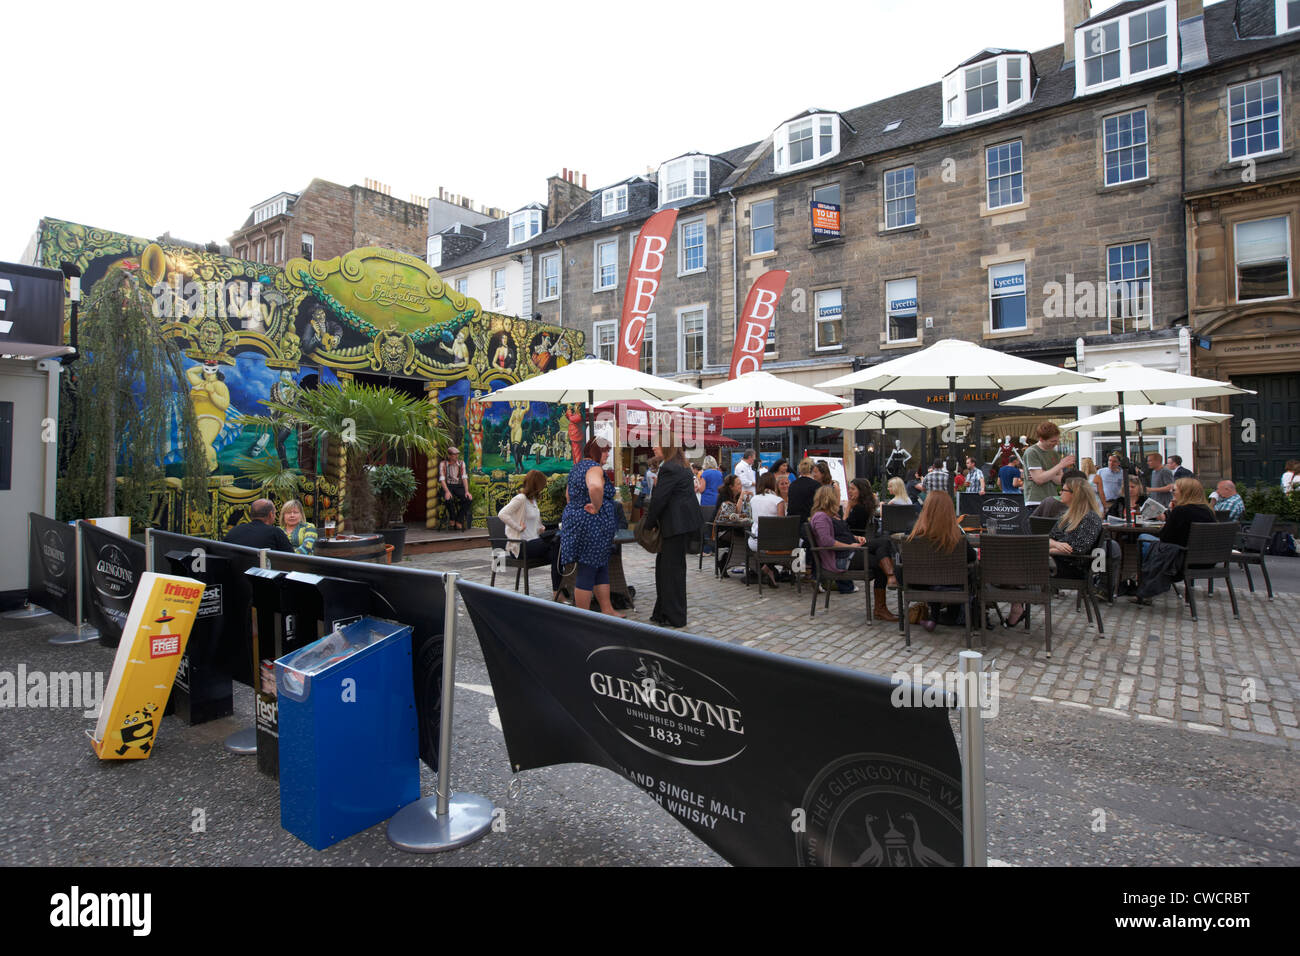 La famosa Spiegeltent Edinburgh Fringe Festival luogo George st street Scotland Regno Unito Regno Unito Foto Stock